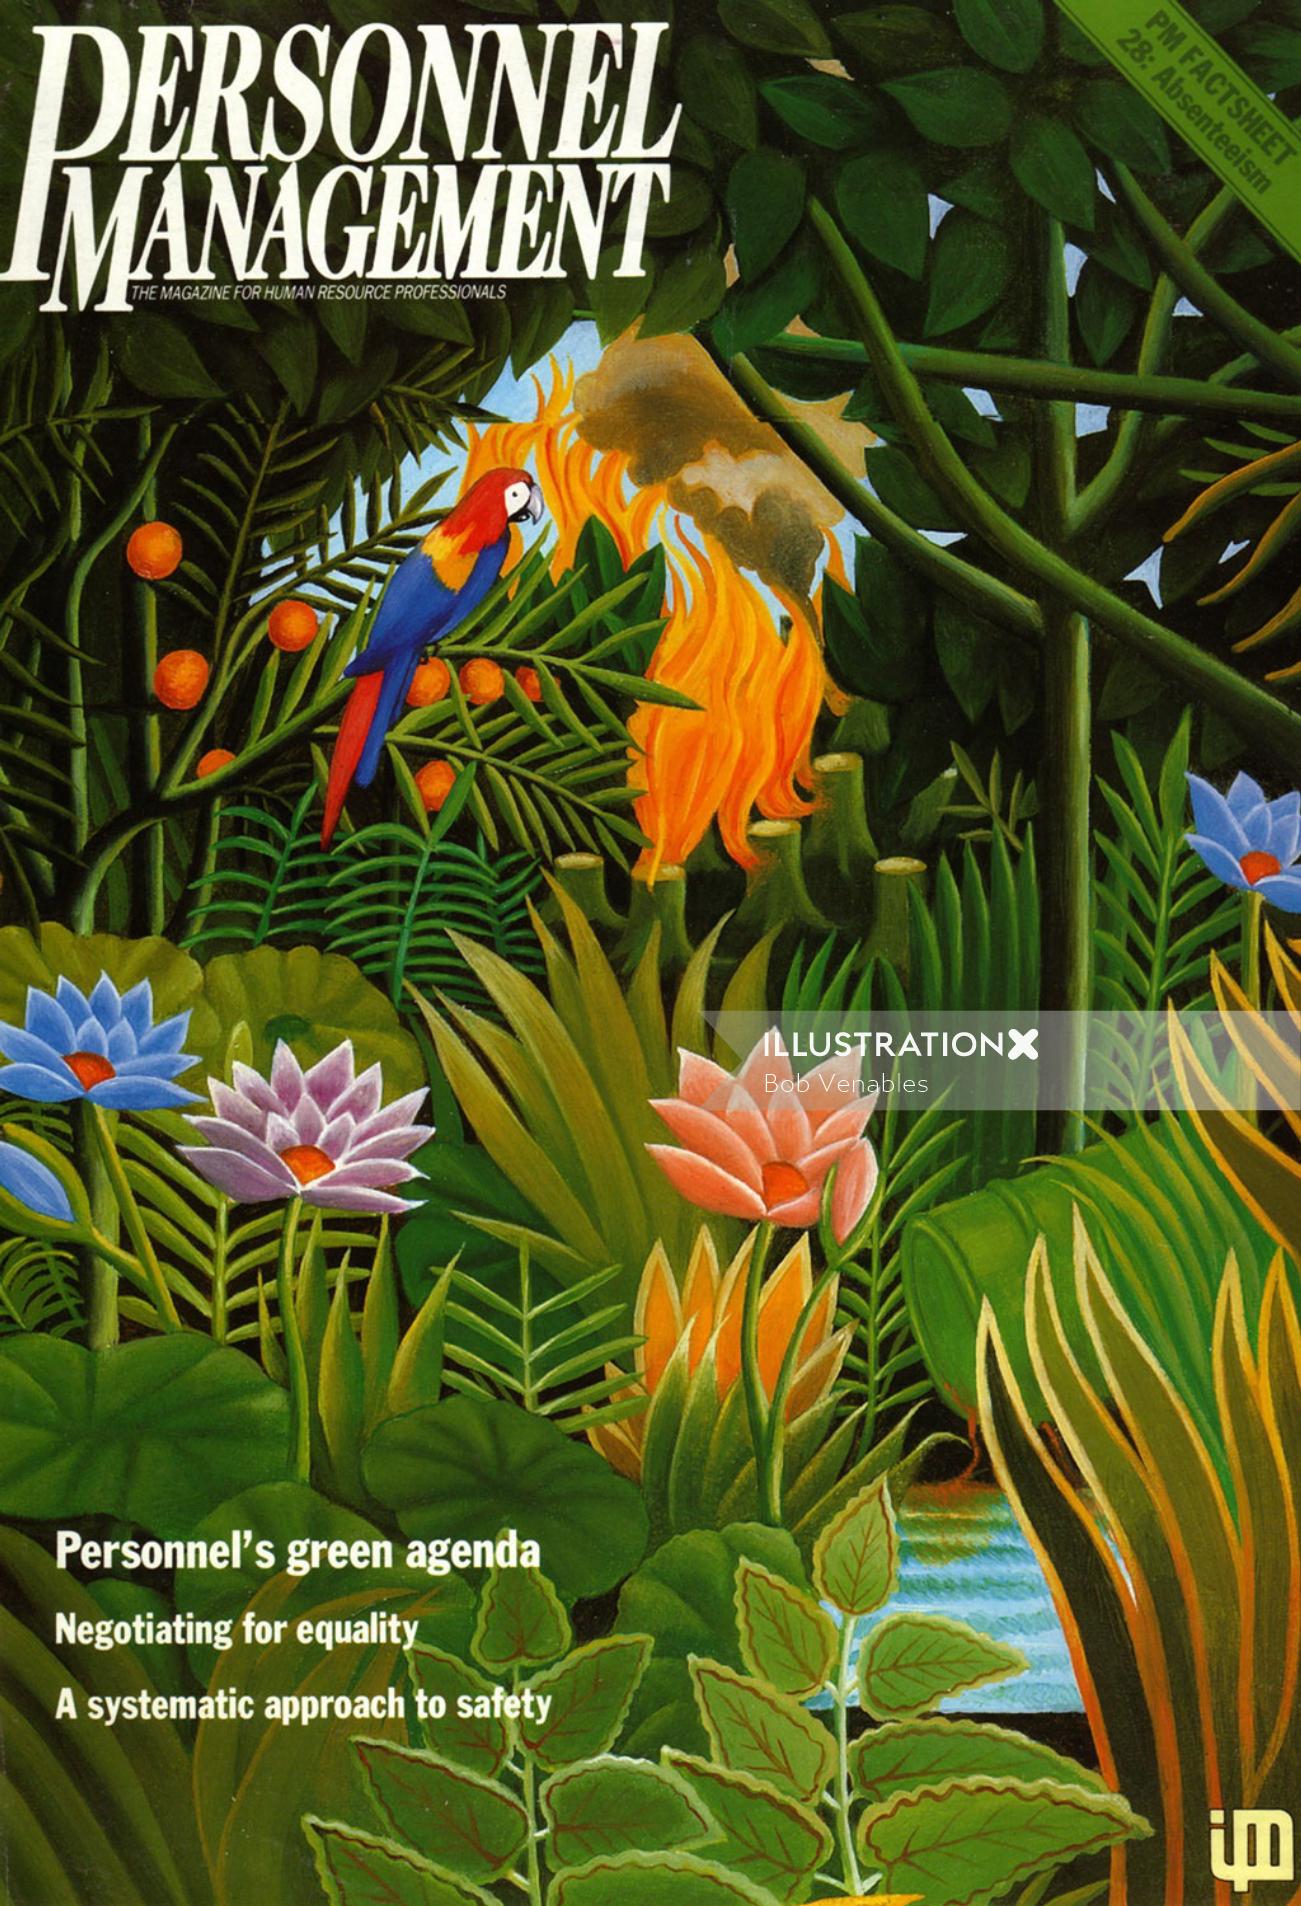 Couverture du magazine Personnel Management sur Rainforest